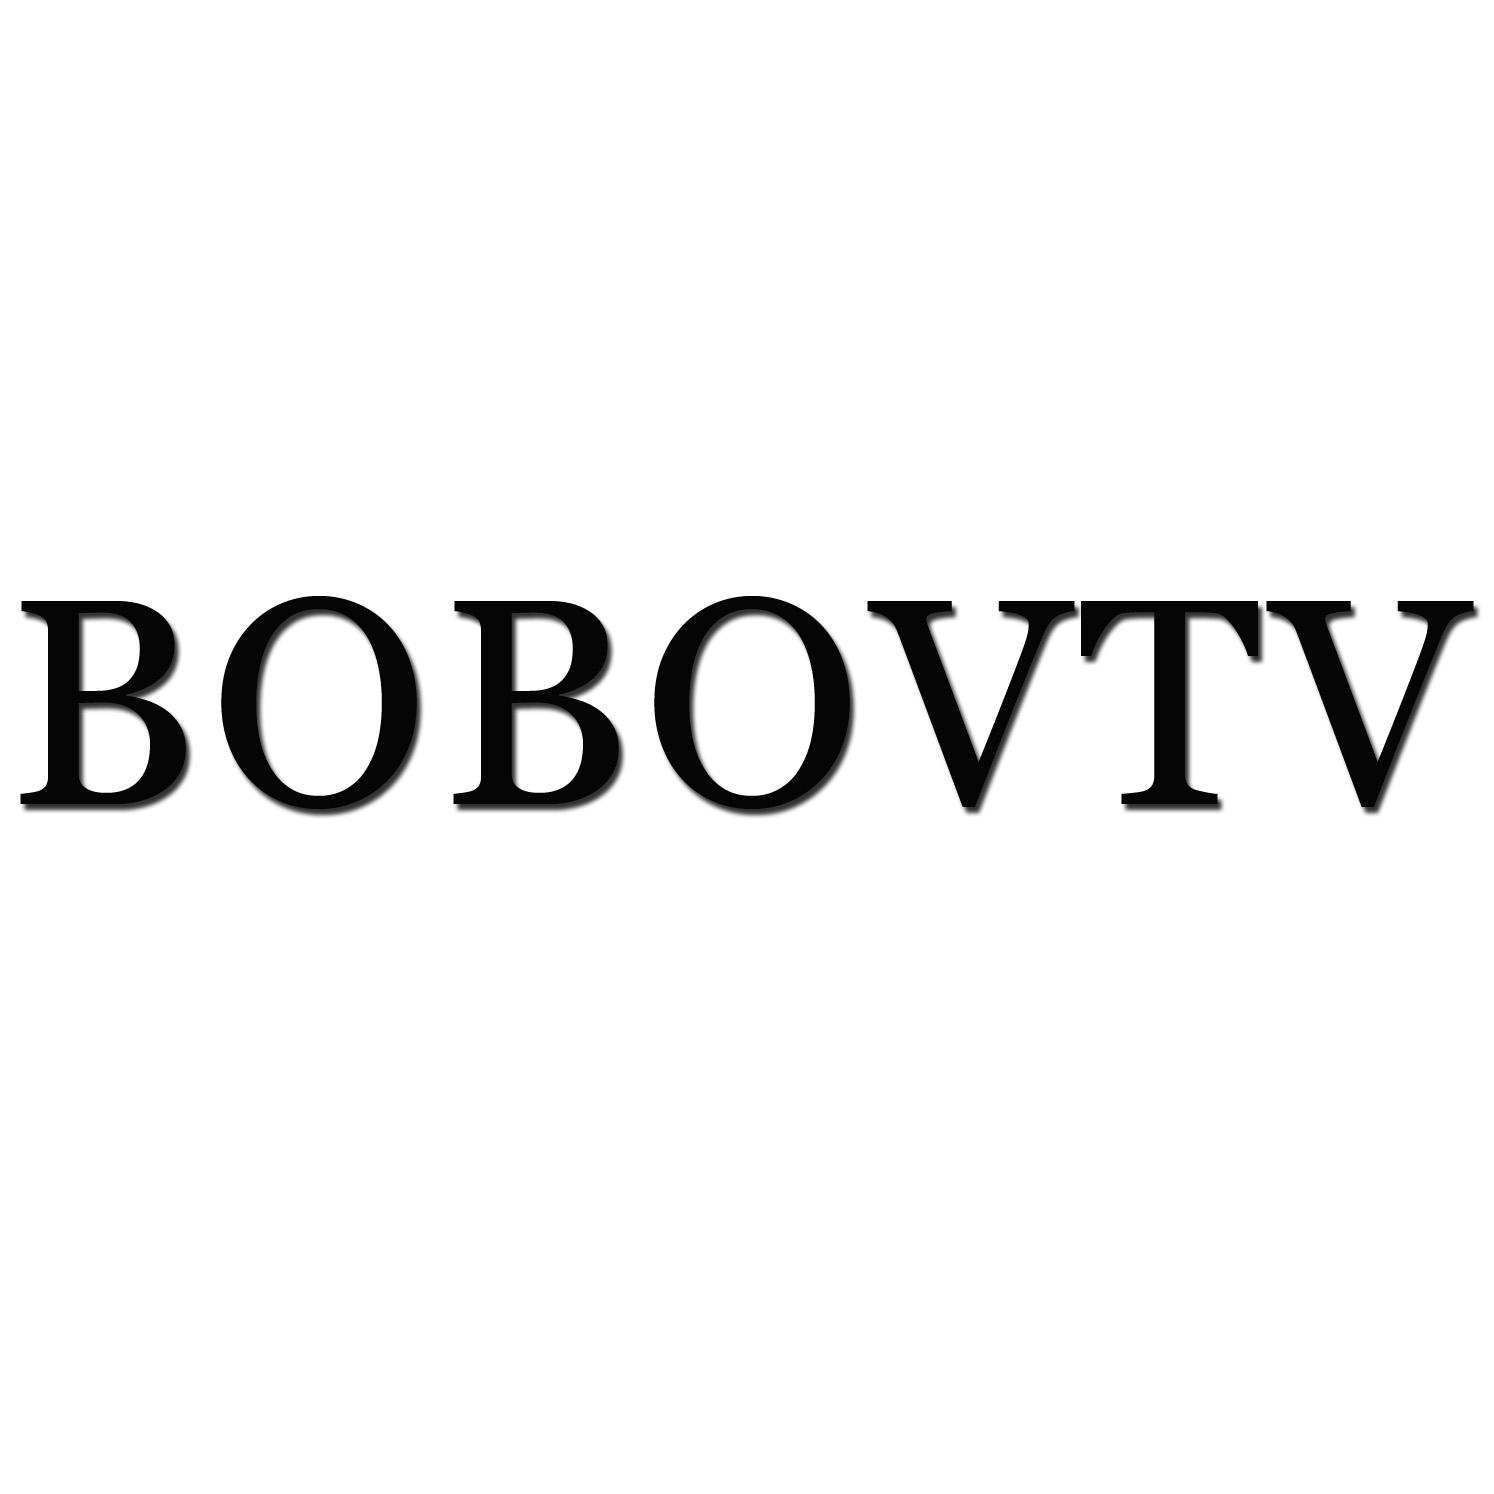 BOBOVTV